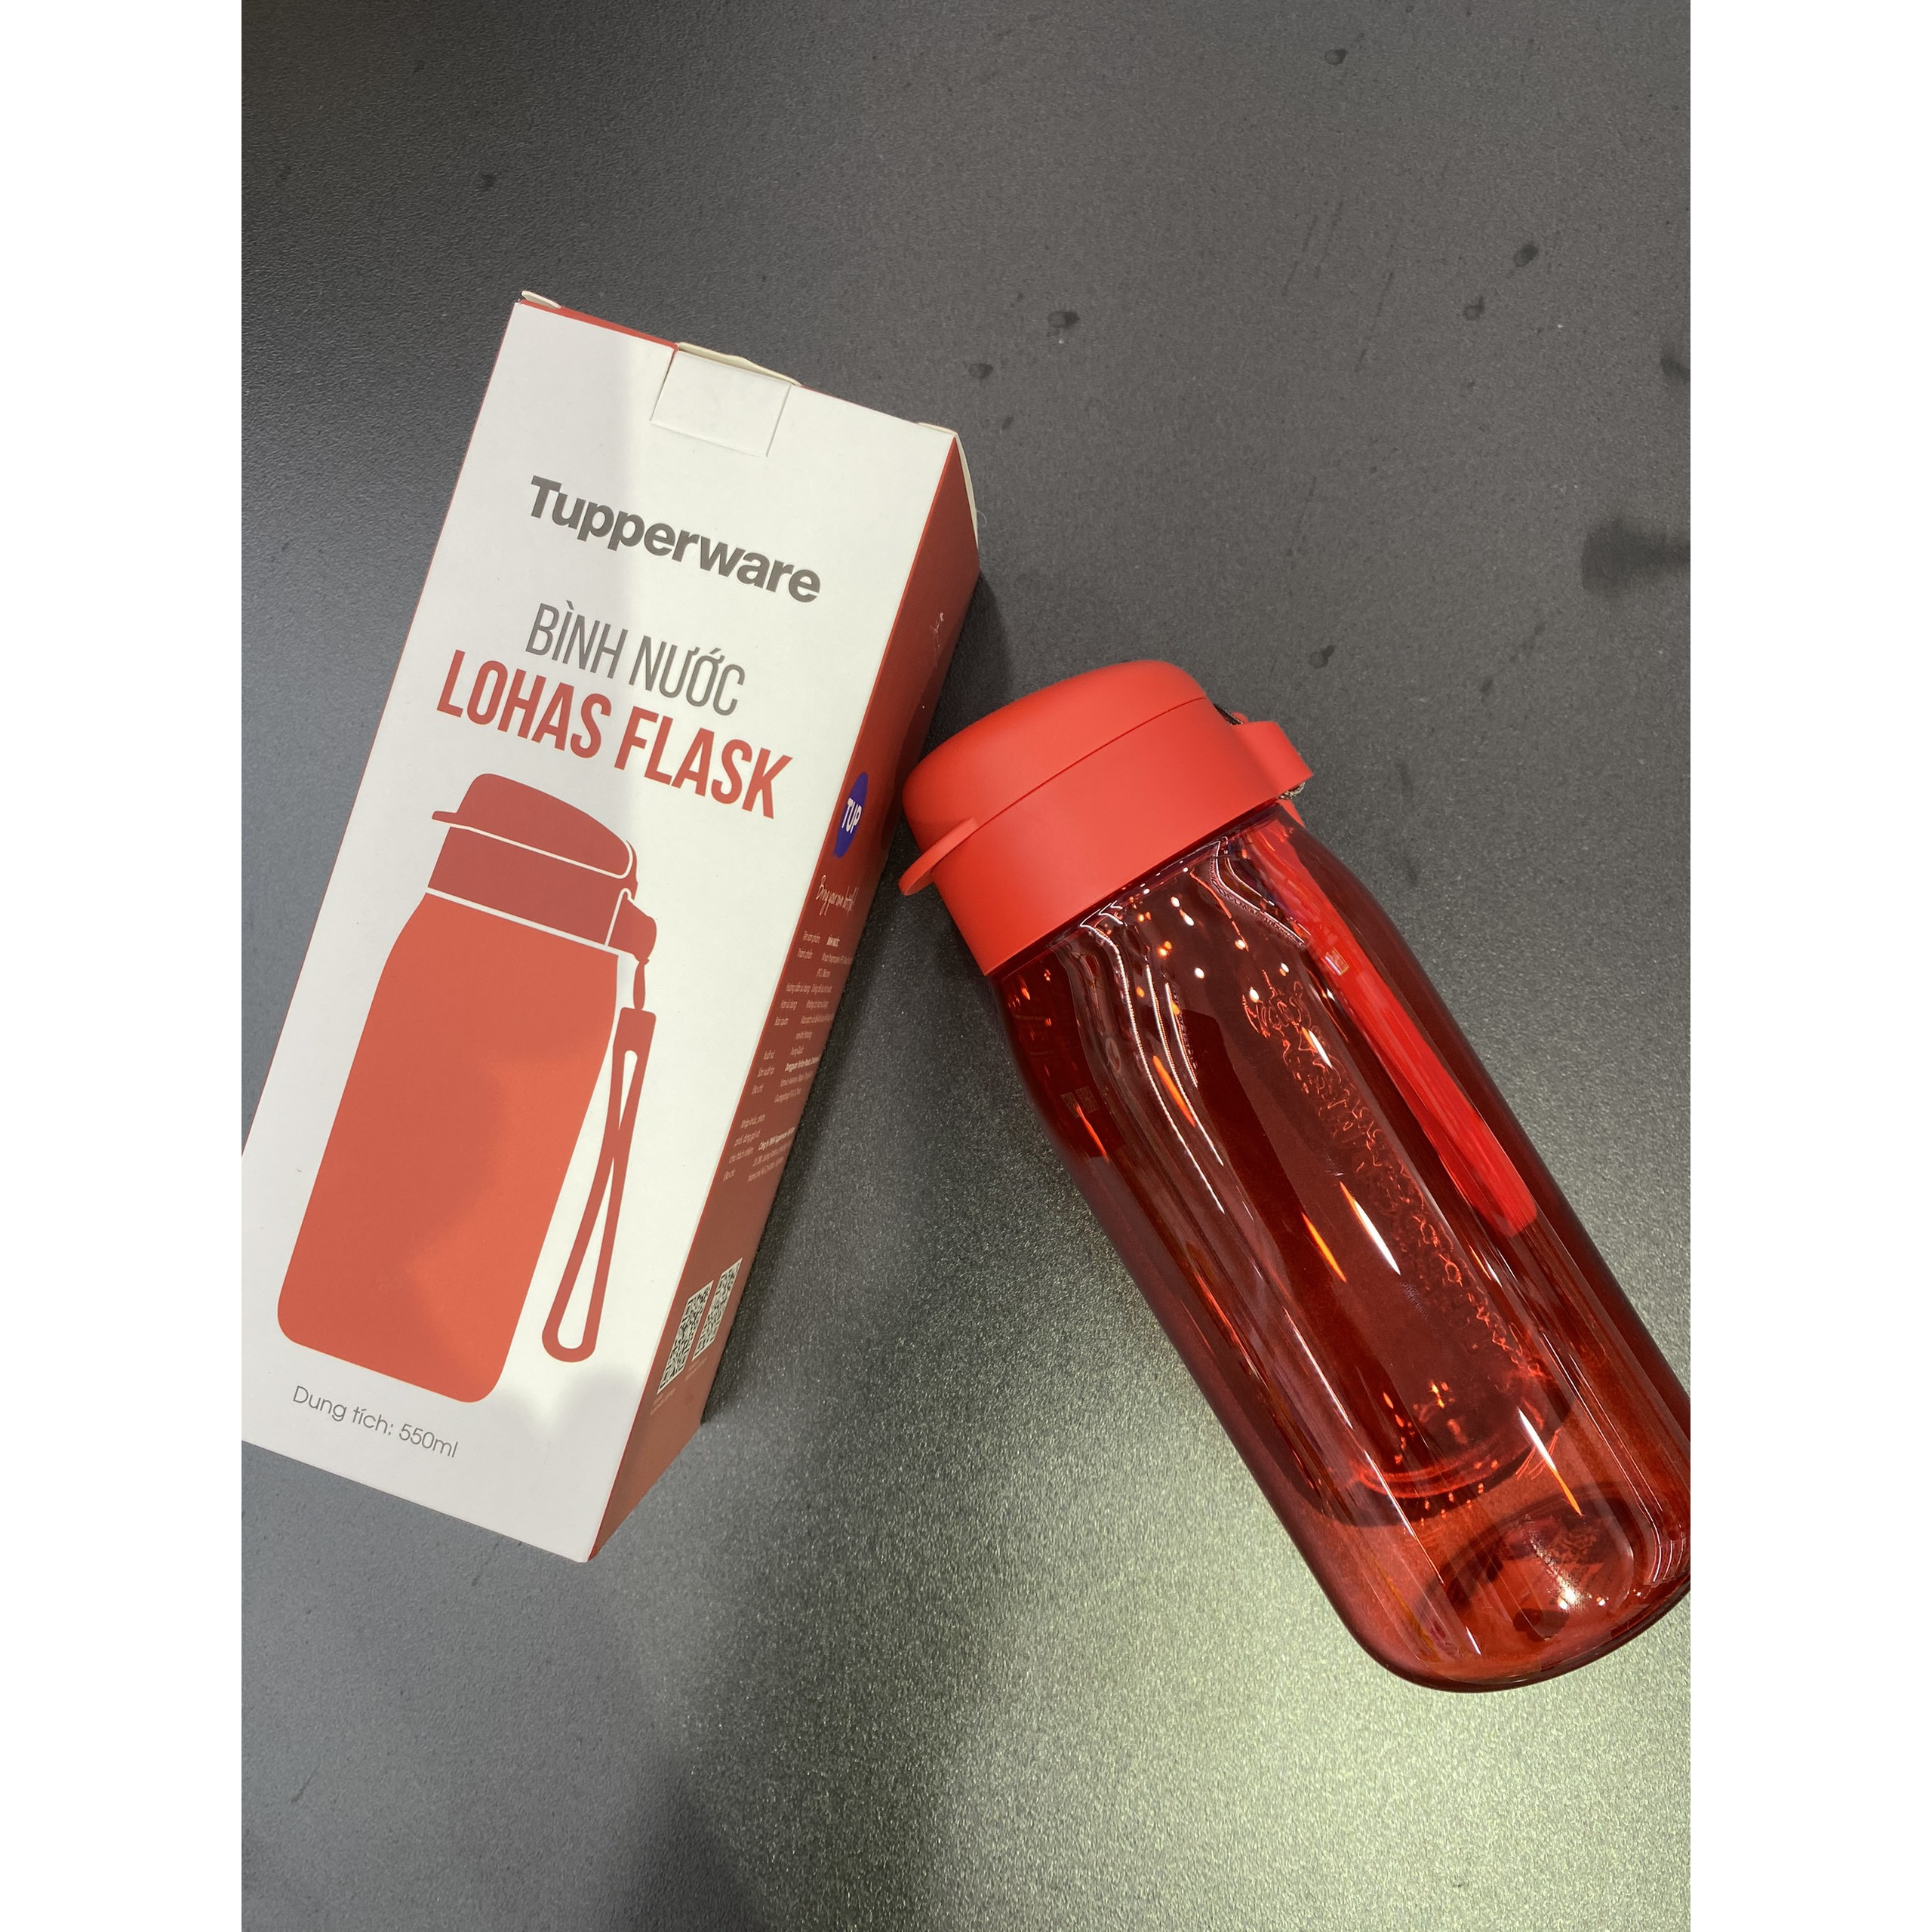 Bình nước Lohas Flask 550ML Tupperware chính hãng ( màu mới)